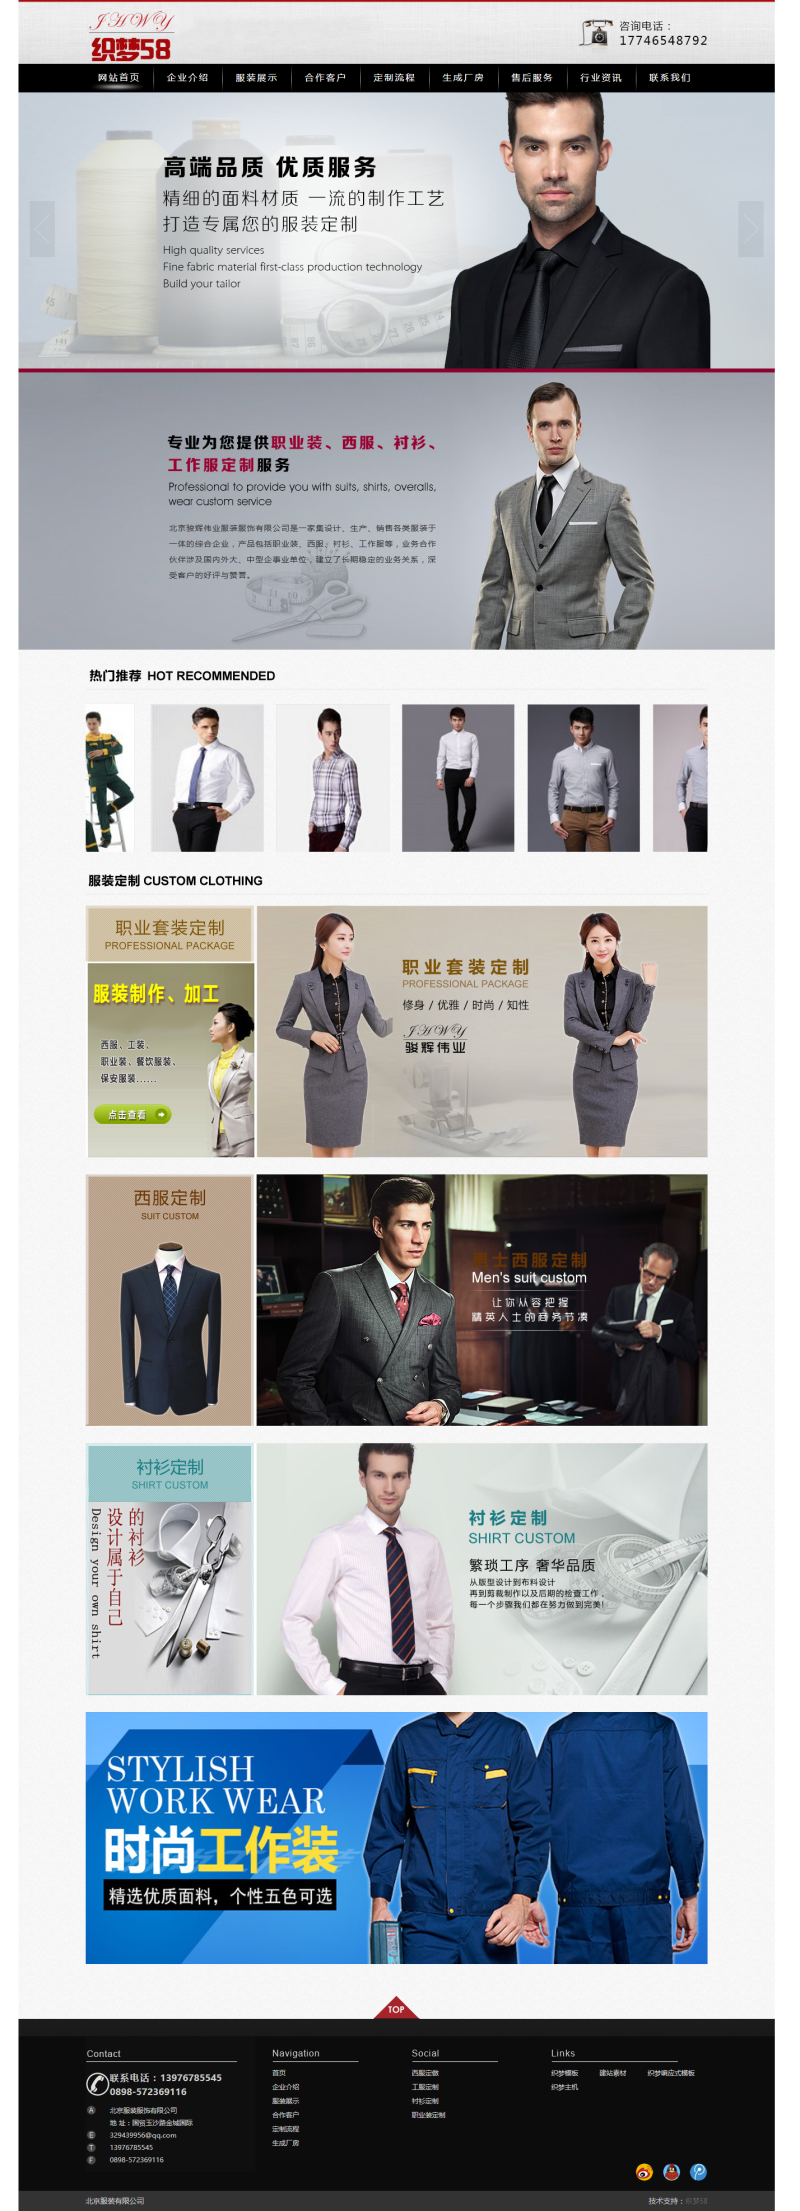 服装职业服饰面料类企业网站织梦模板